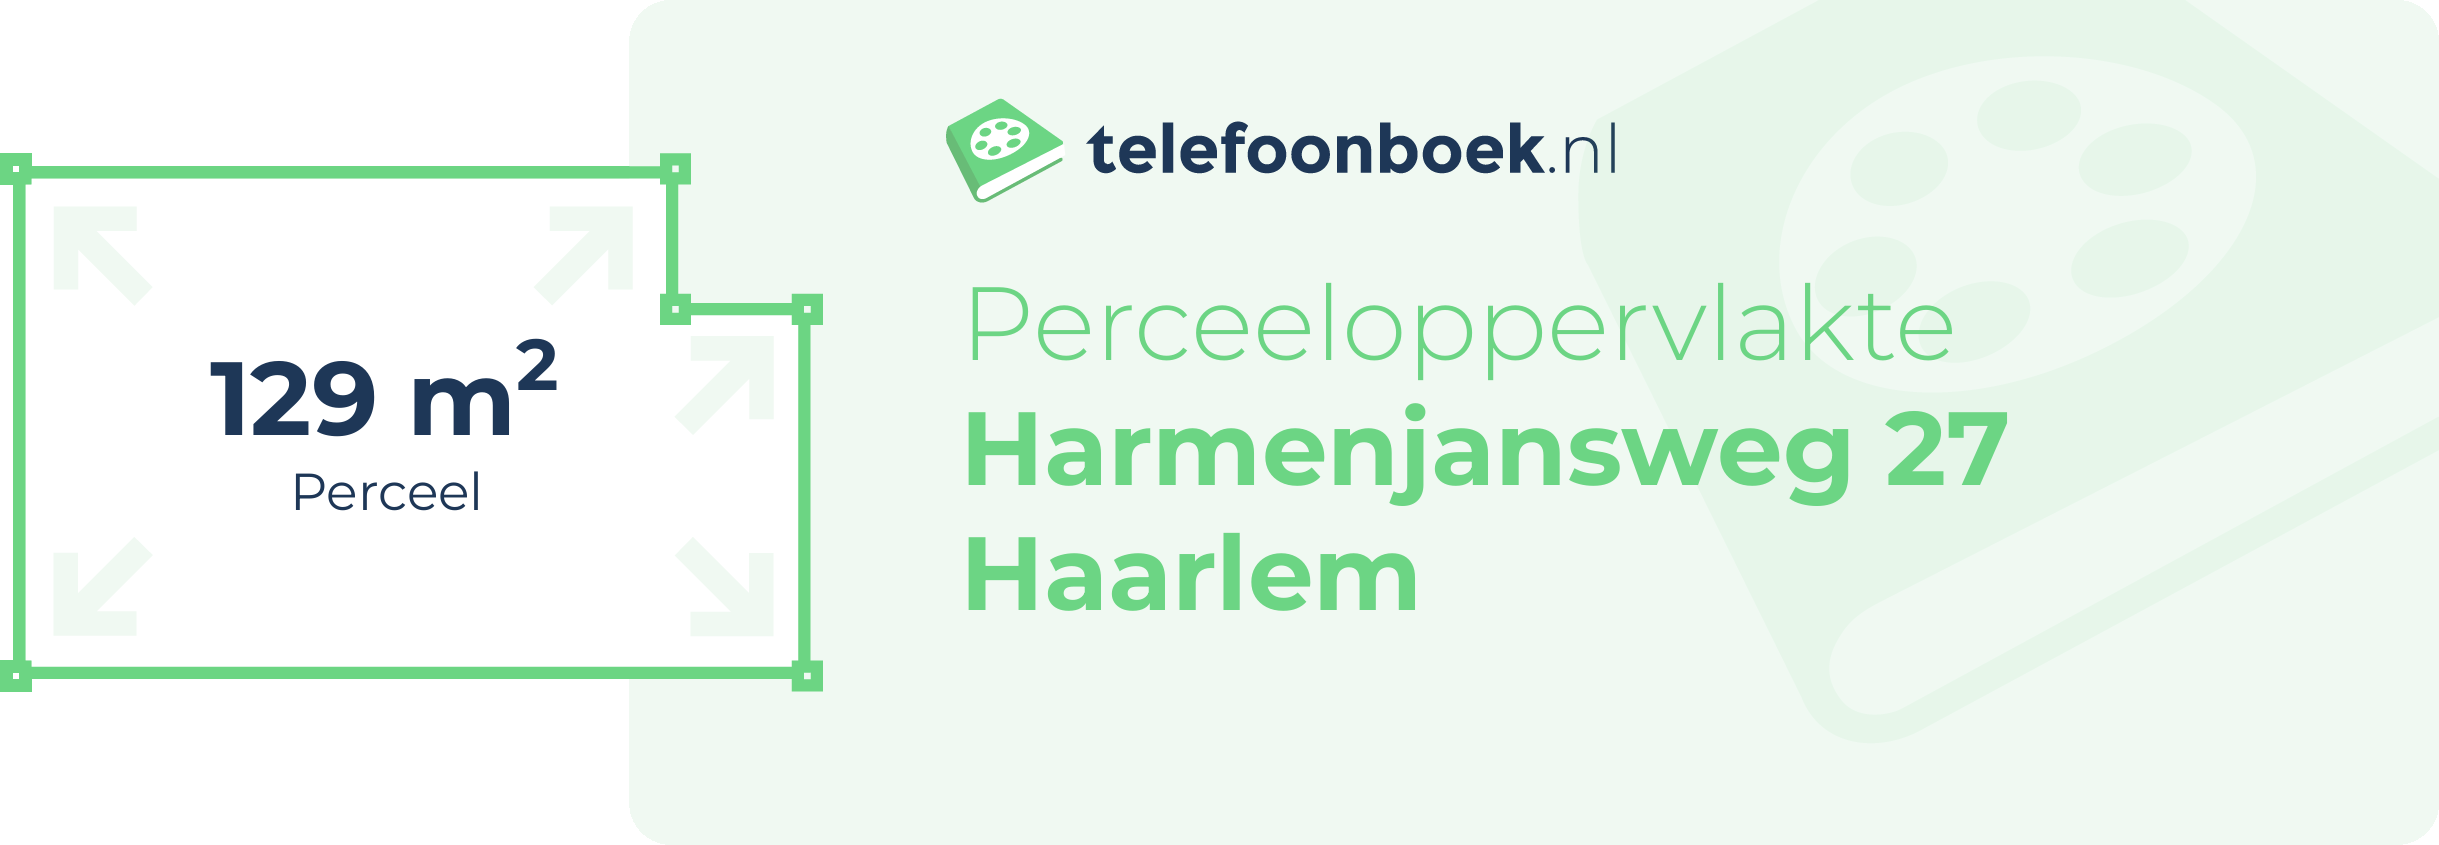 Perceeloppervlakte Harmenjansweg 27 Haarlem